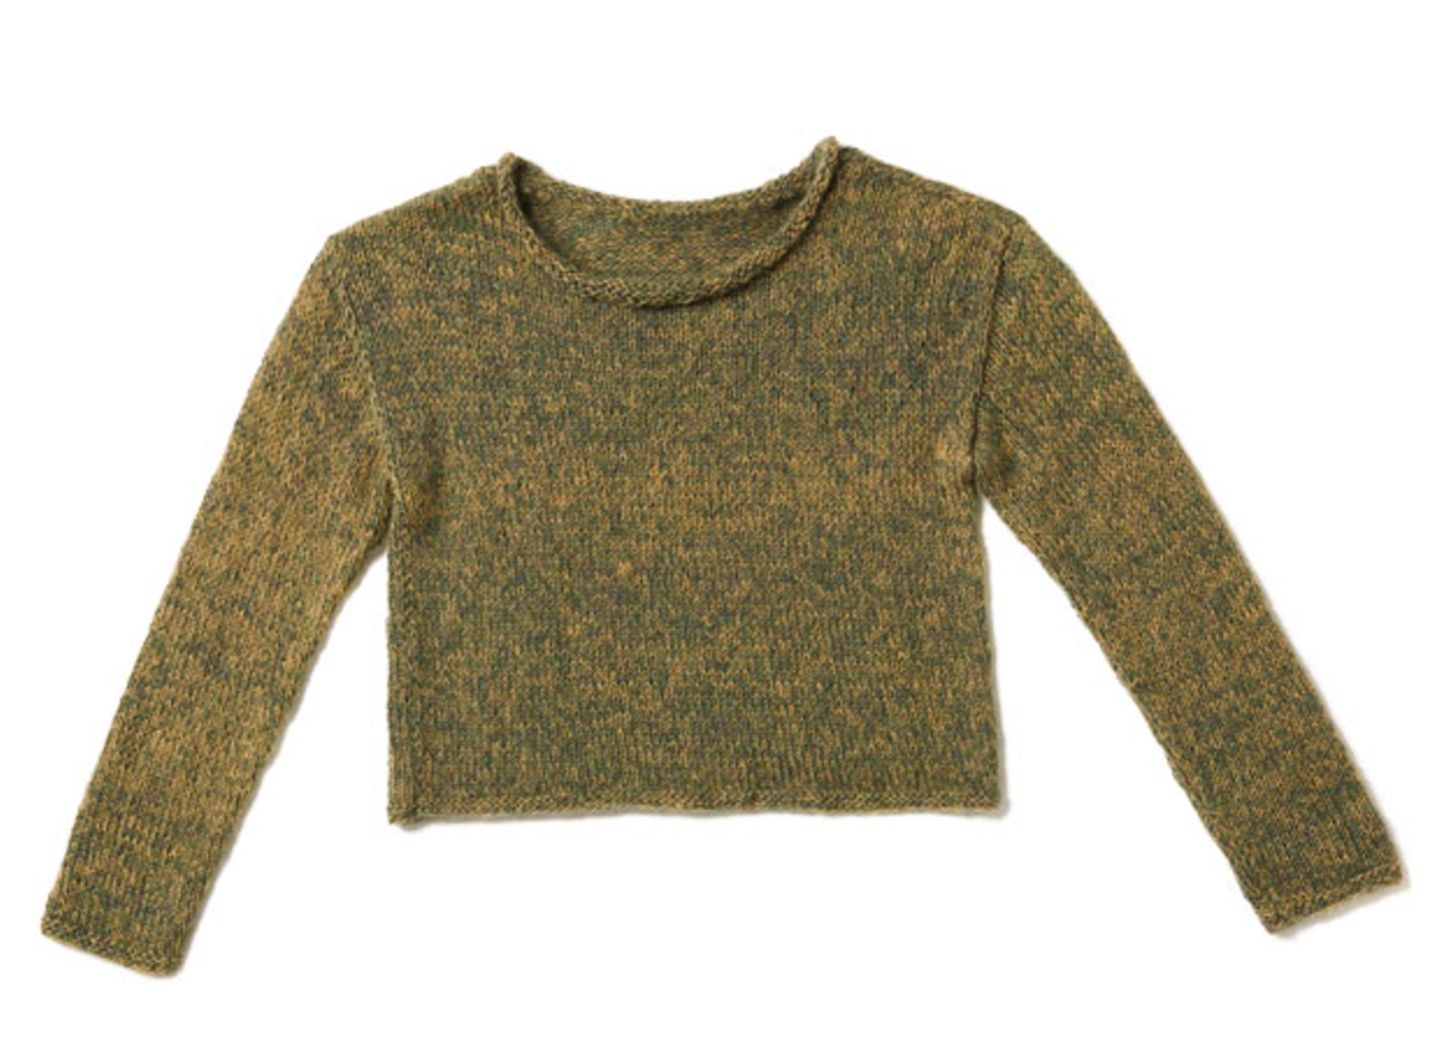 Garnmix-Pullover stricken - eine Anleitung